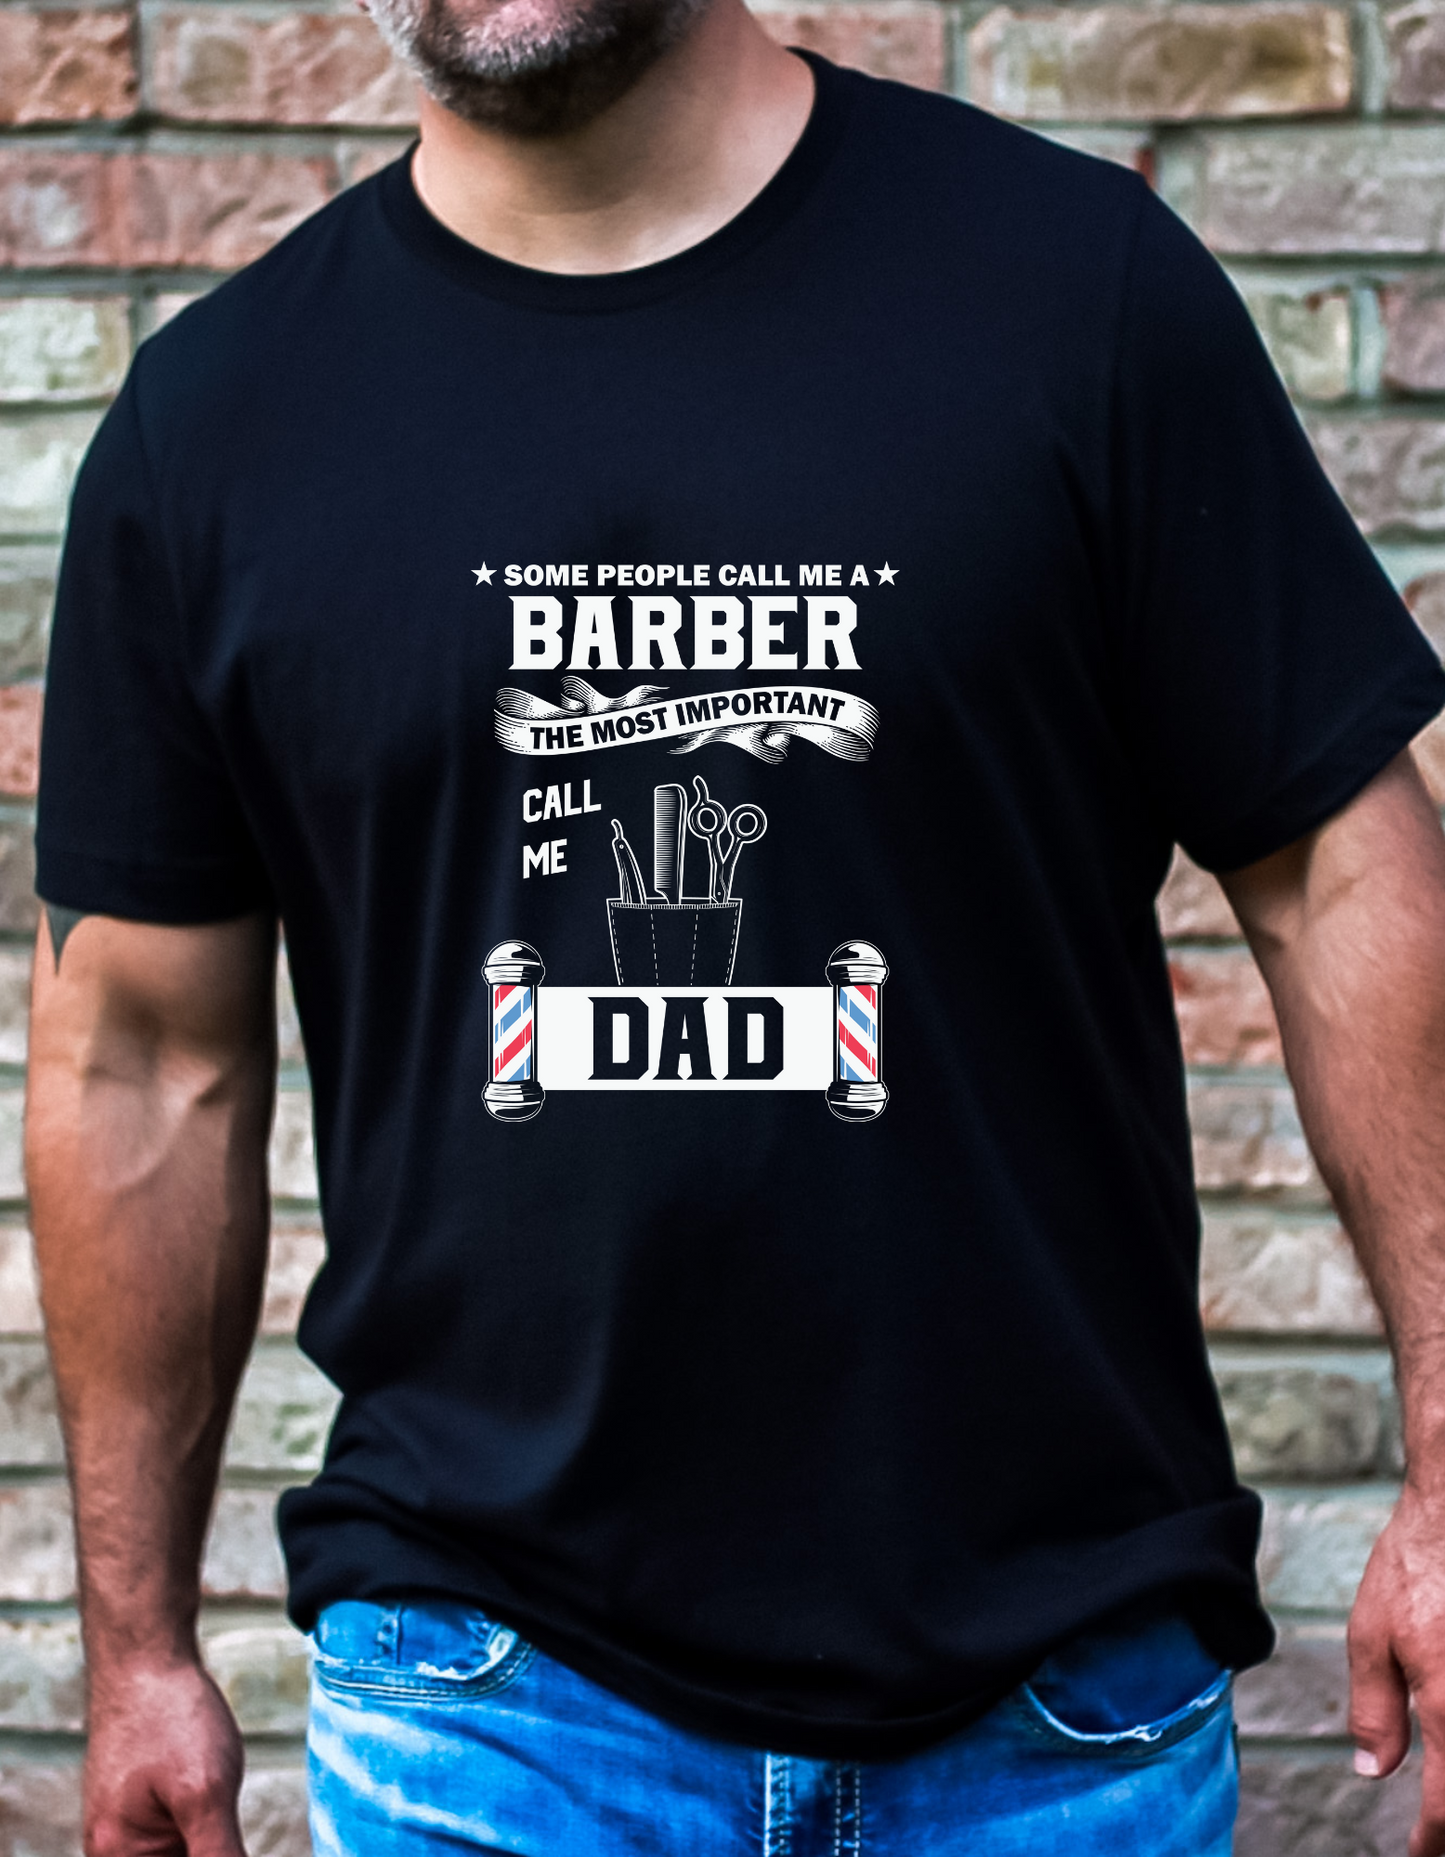 Call me Dad T-shirt